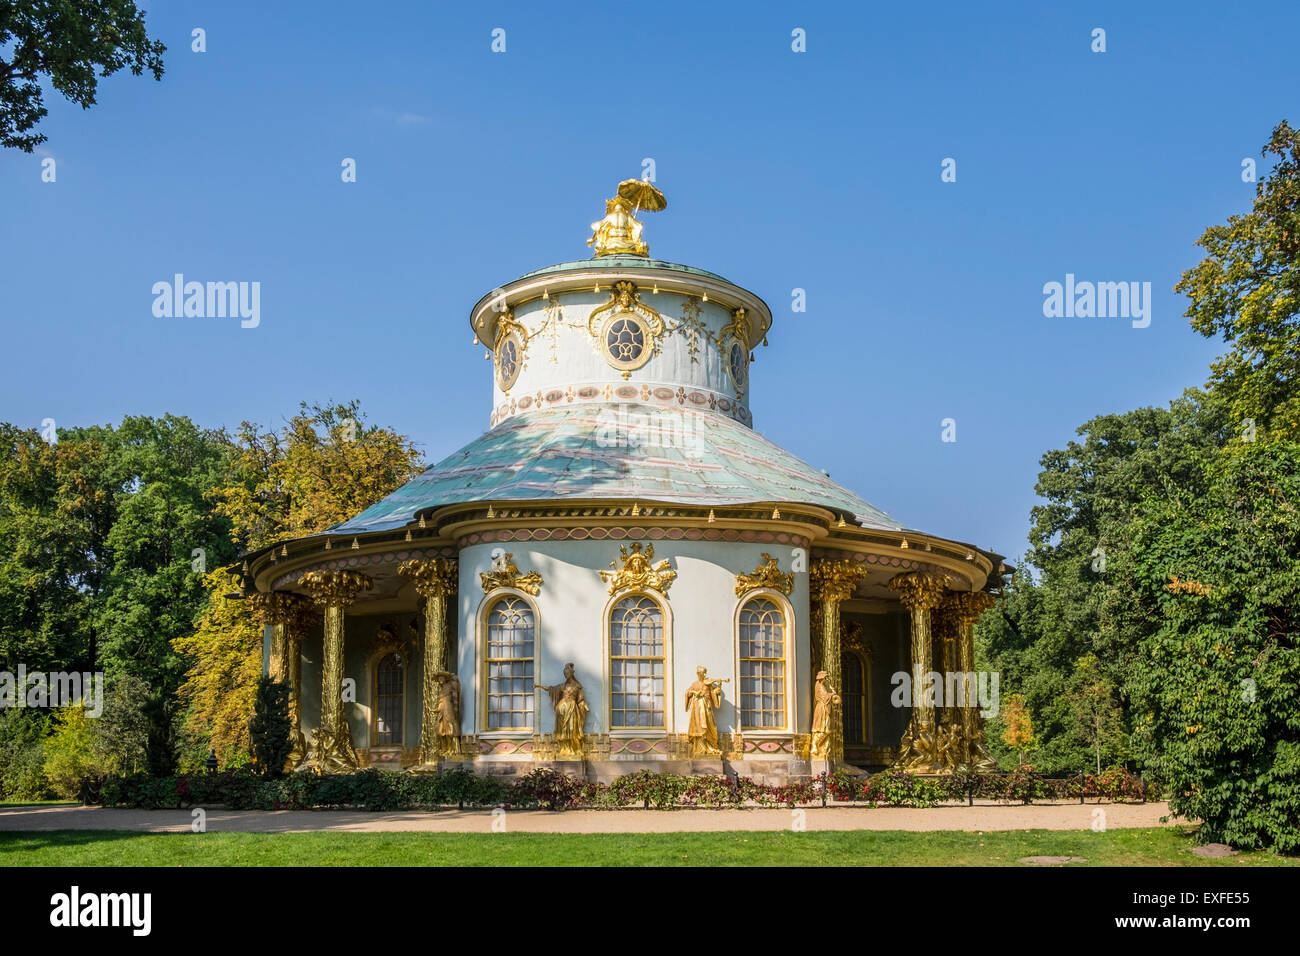 Le thé chinois au Jardins de Sanssouci Potsdam , Berlin, Allemagne site du patrimoine mondial de l'UNESCO Banque D'Images